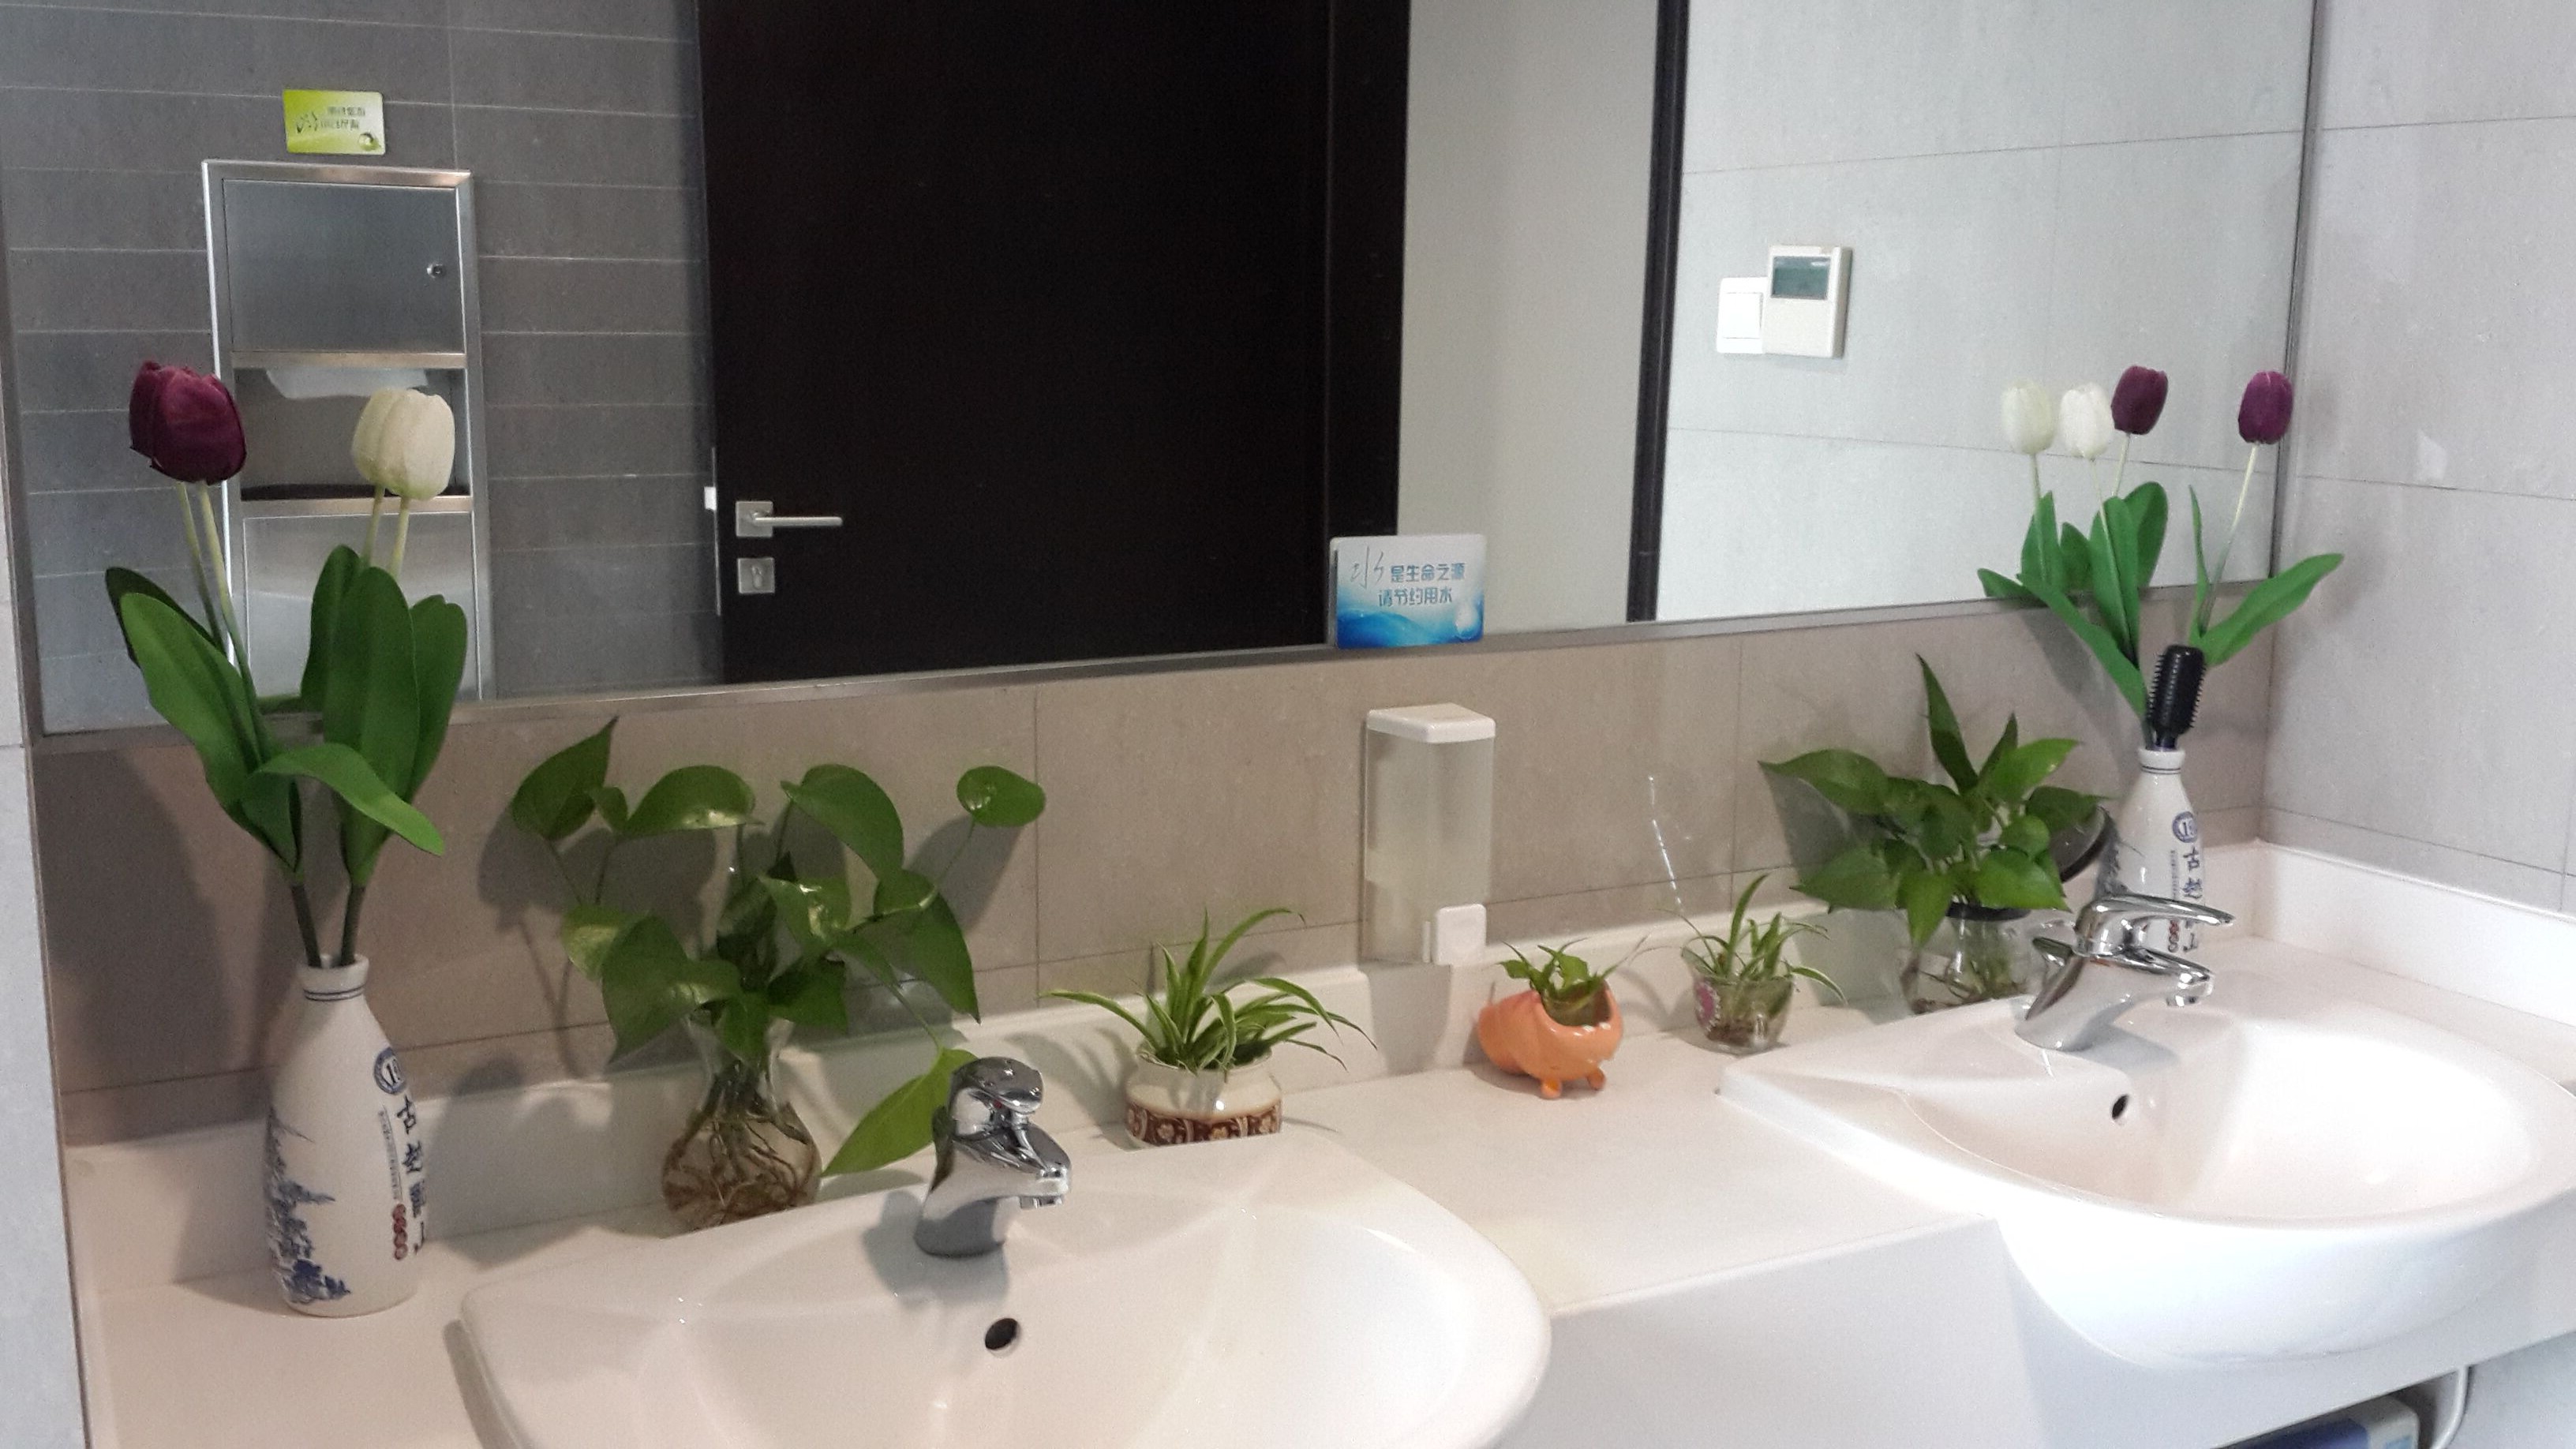 保洁小植物废物利用装点洗手间4.jpg